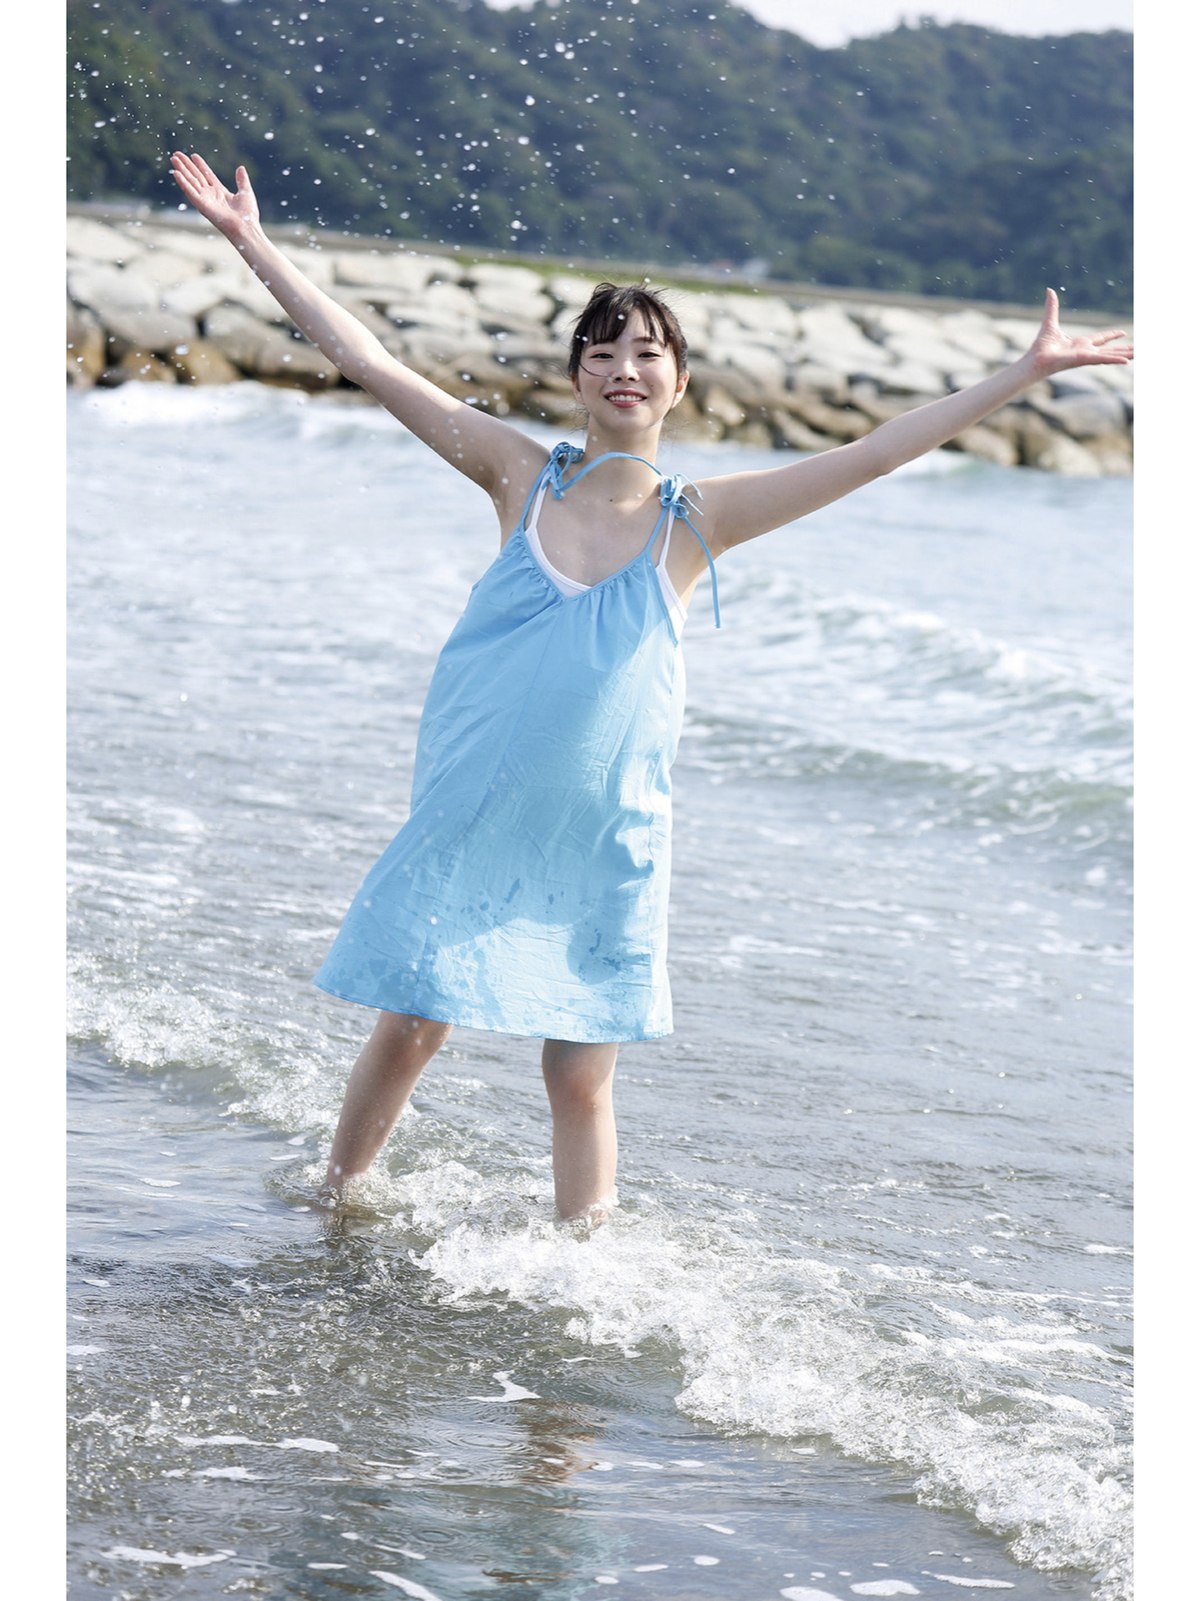 Photobook Kozue Minami 美波こづえ Sound Of Waves 0005 1587781749.jpg